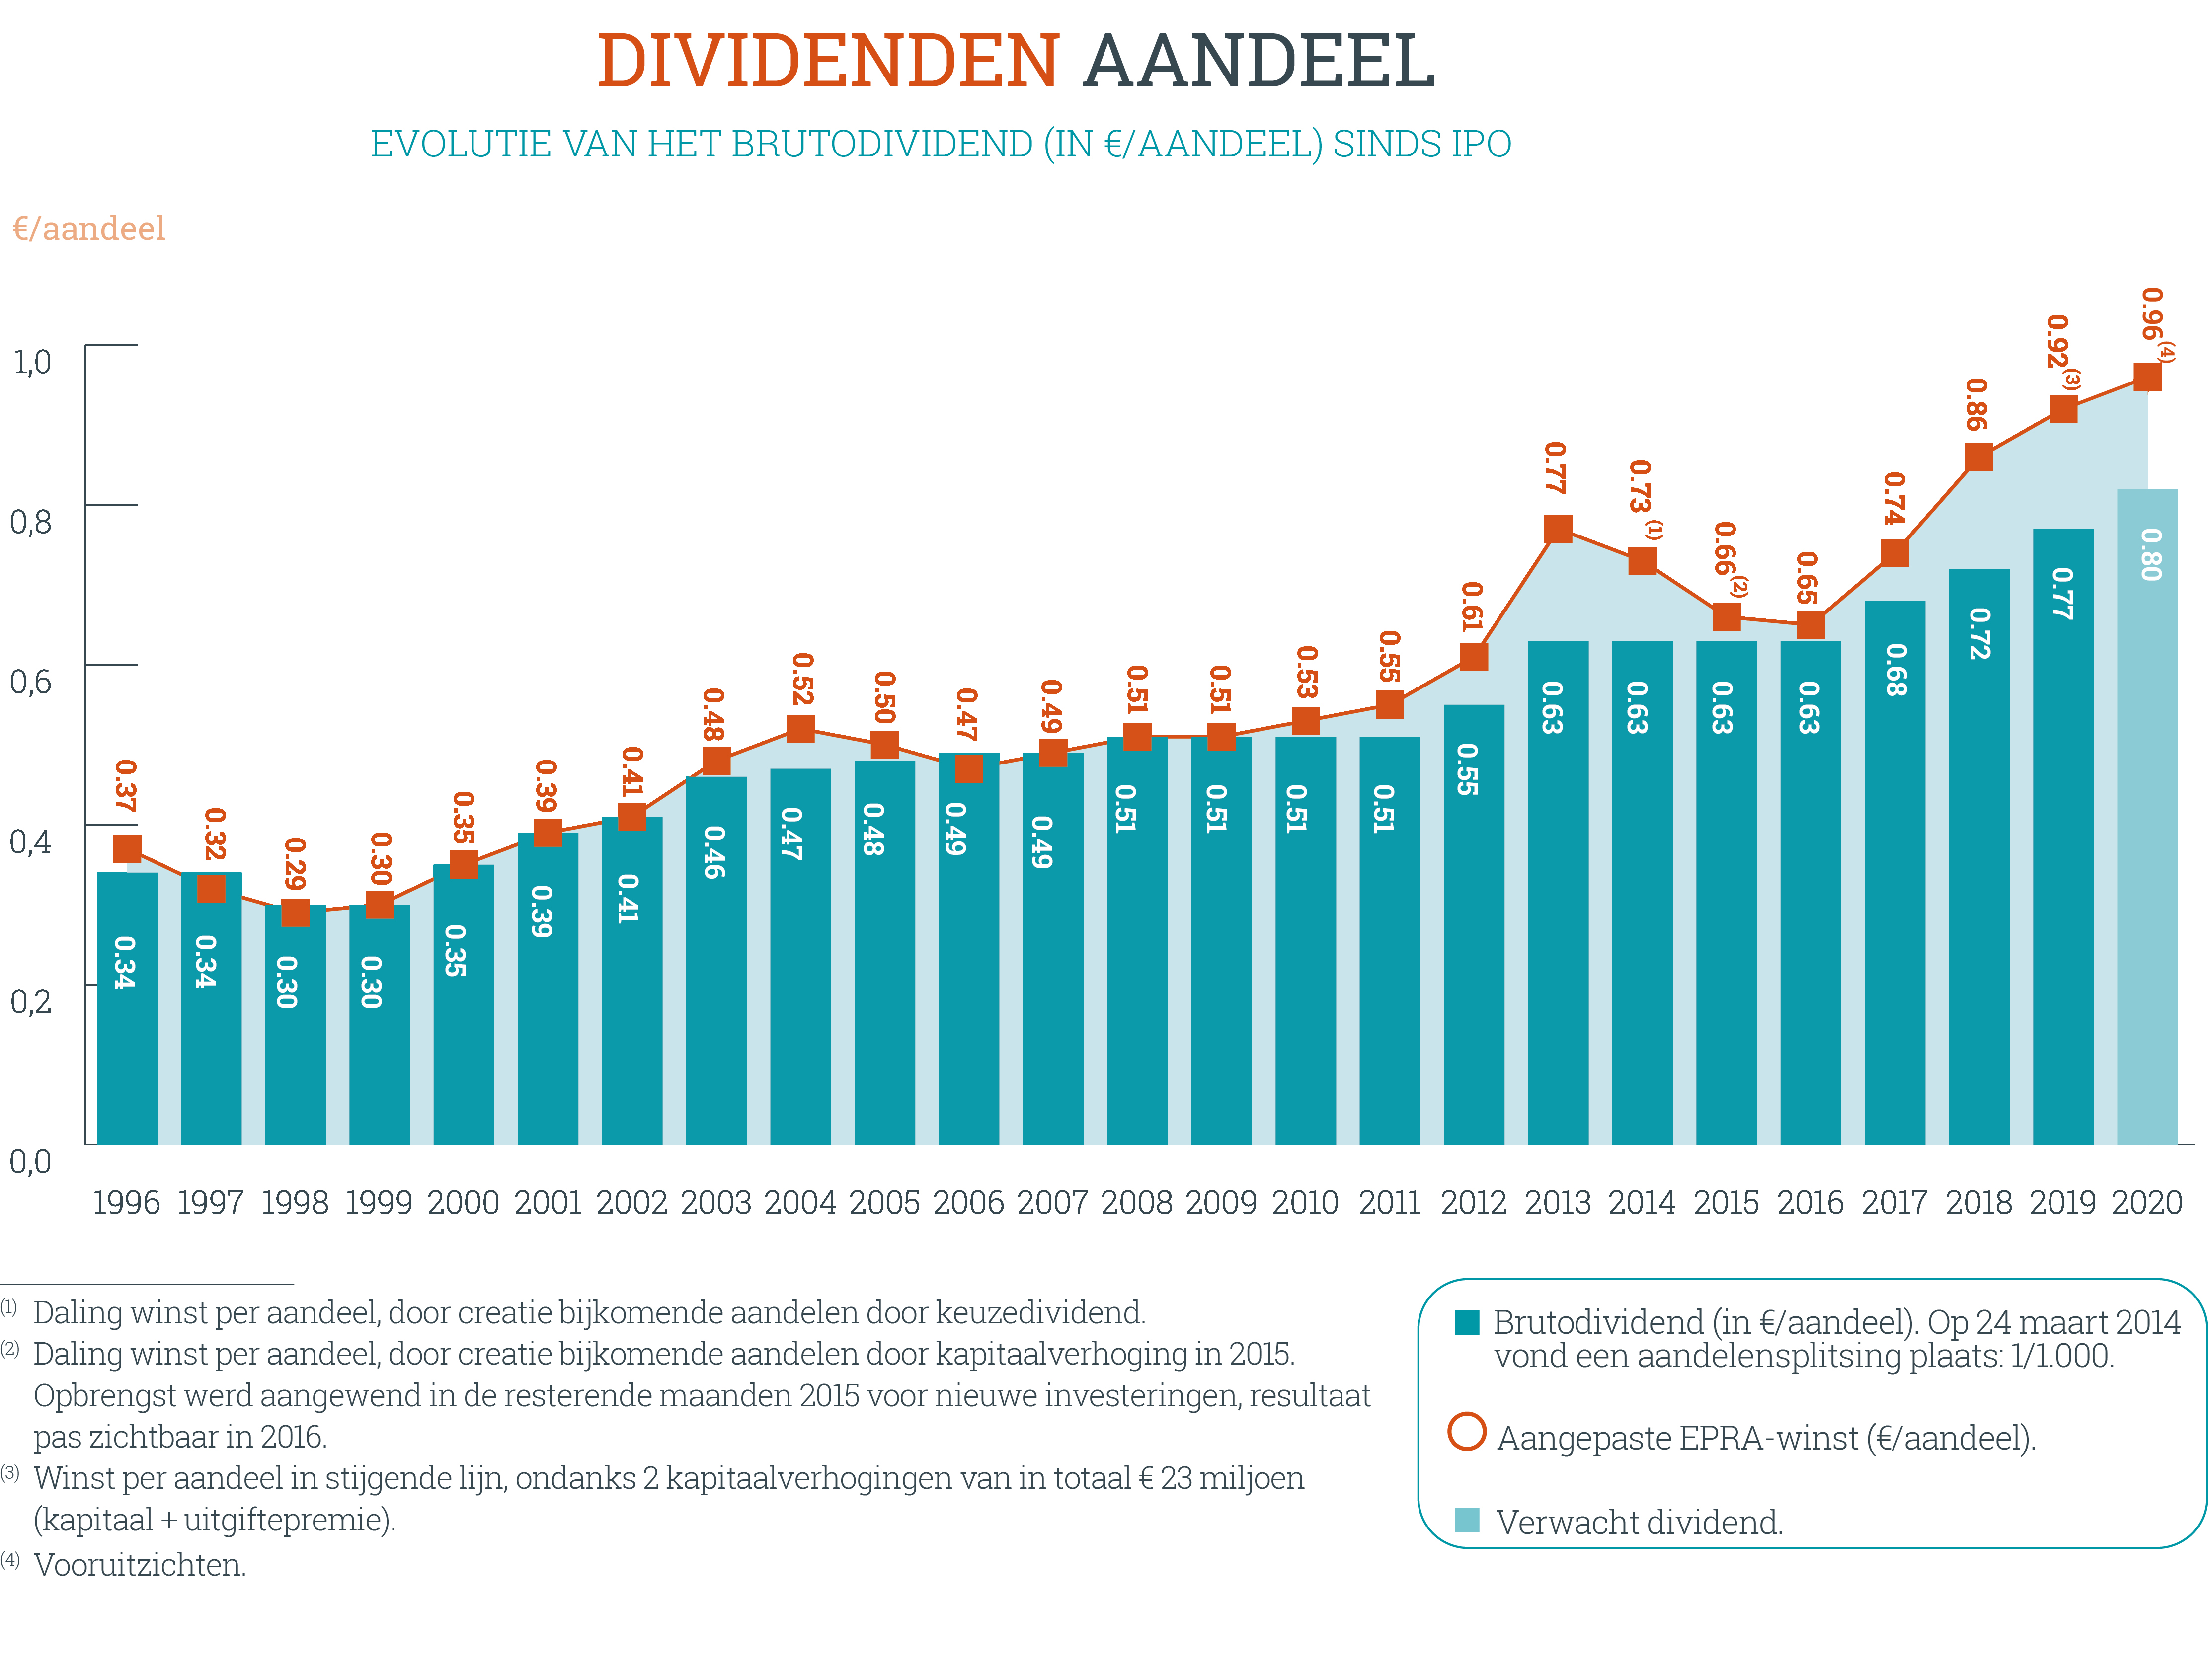 hy2020-dividendperaandeel-nl